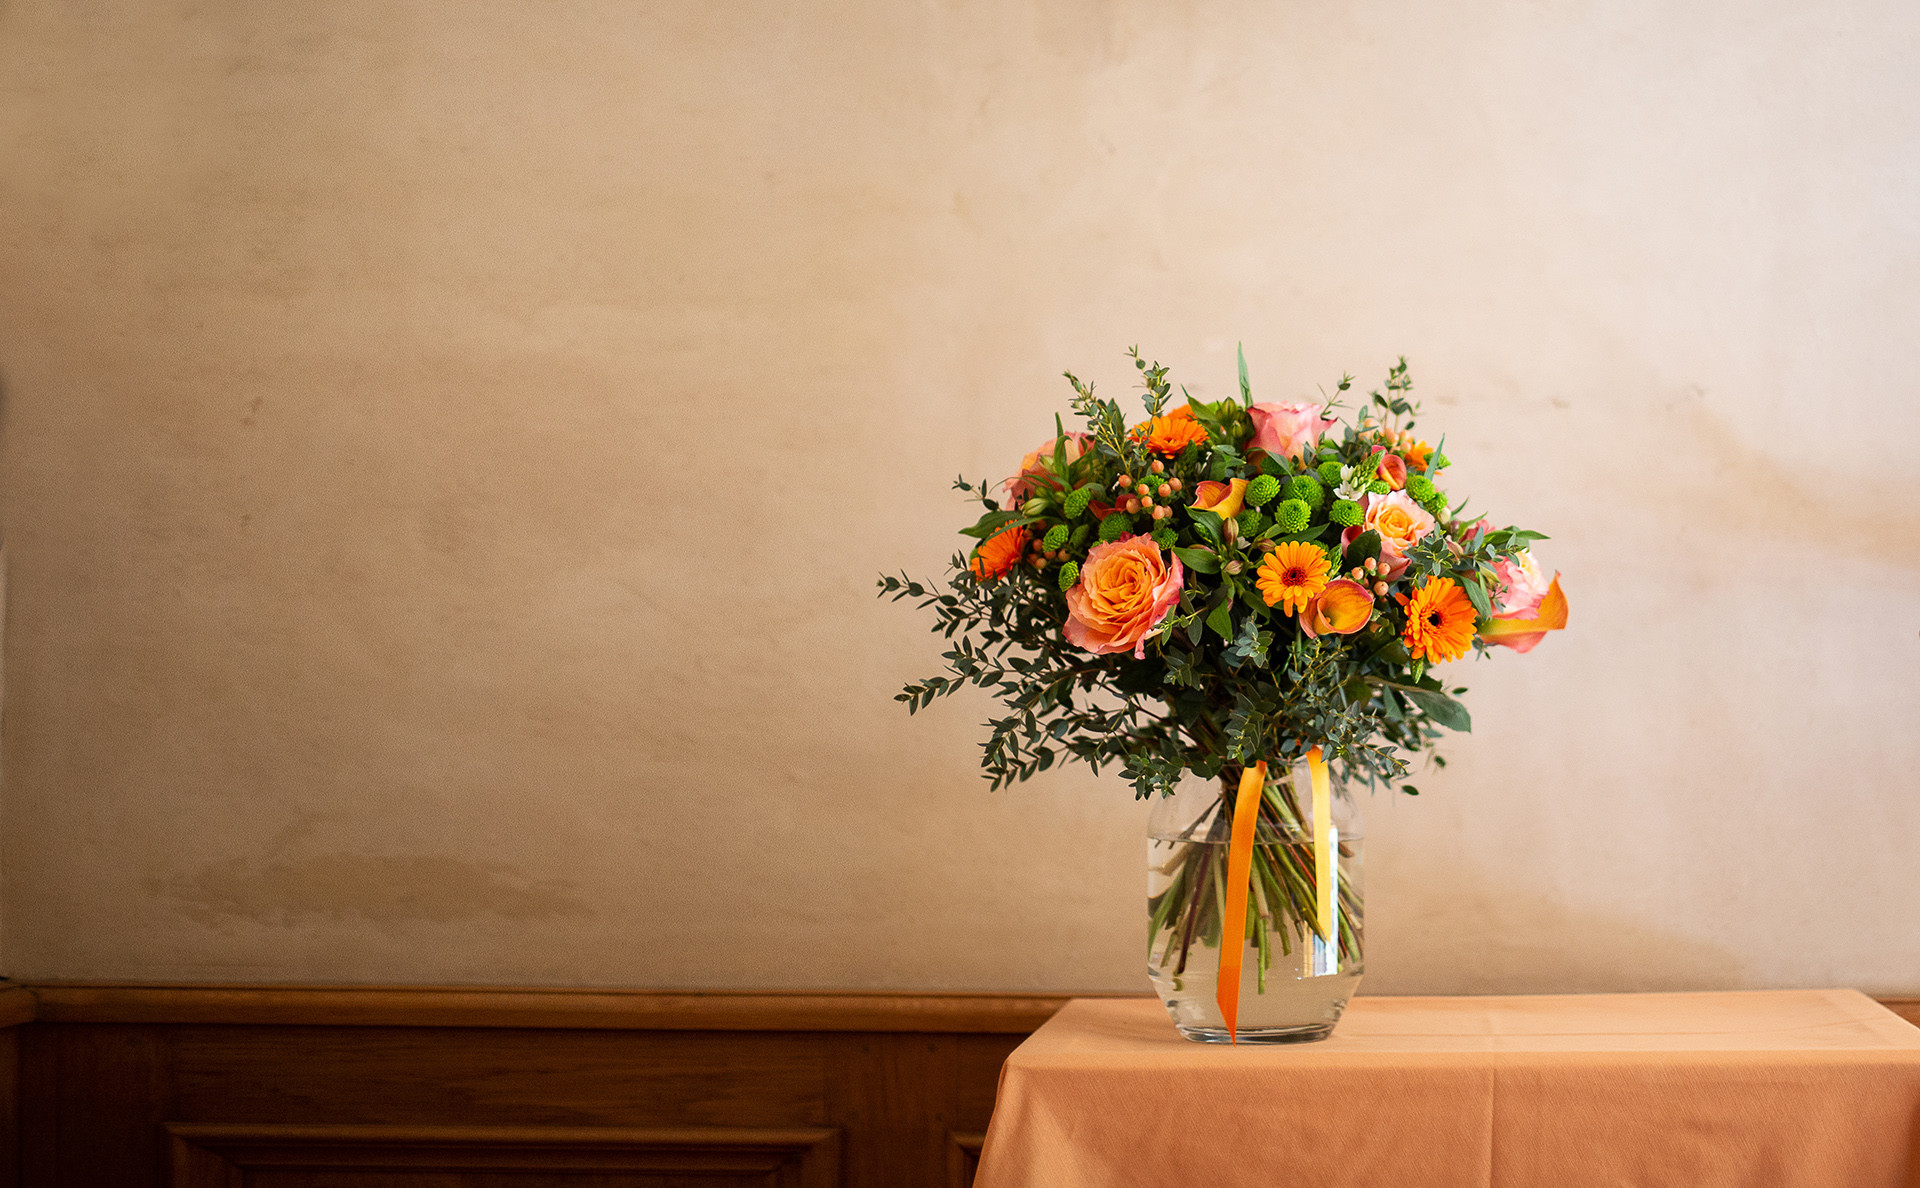 Votre mot personnalisé et votre composition florale sont expédiés dès leur confection dans nos ateliers